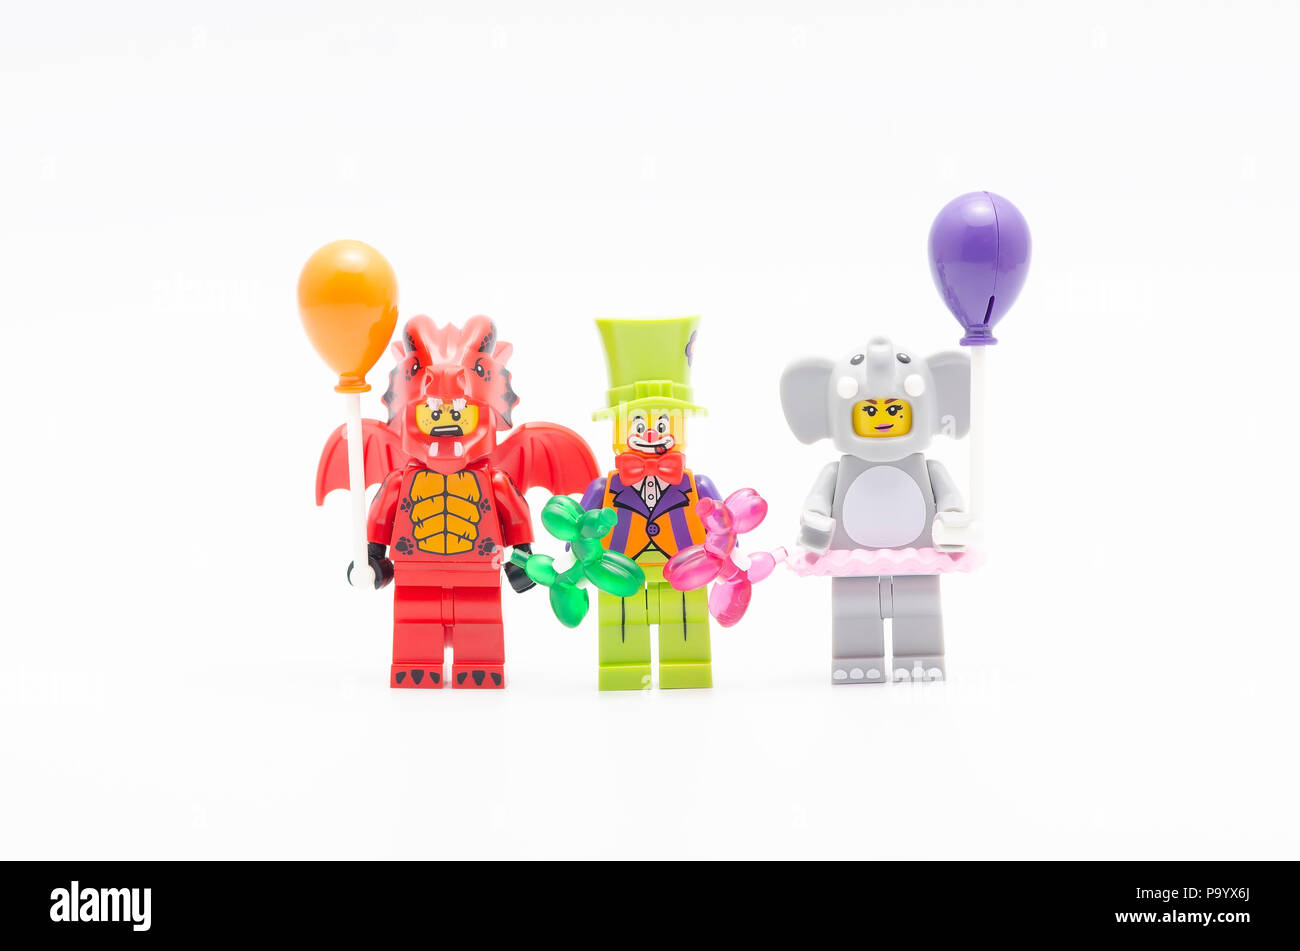 Lego dragon suit guy, party clown e tuta di elefante ragazza con